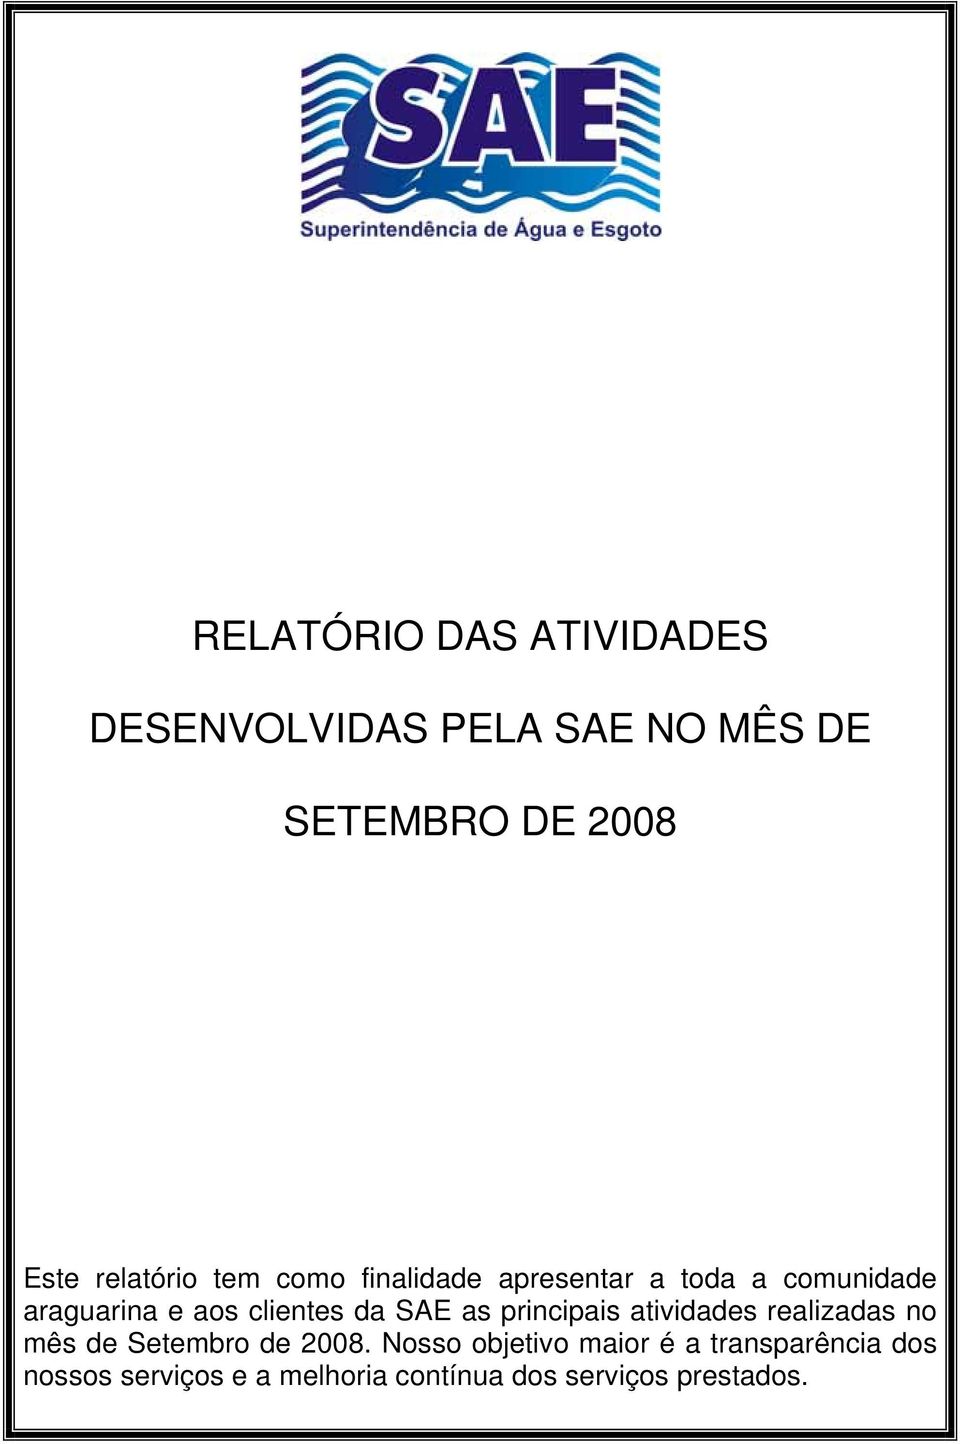 clientes da SAE as principais atividades realizadas no mês de Setembro de 2008.